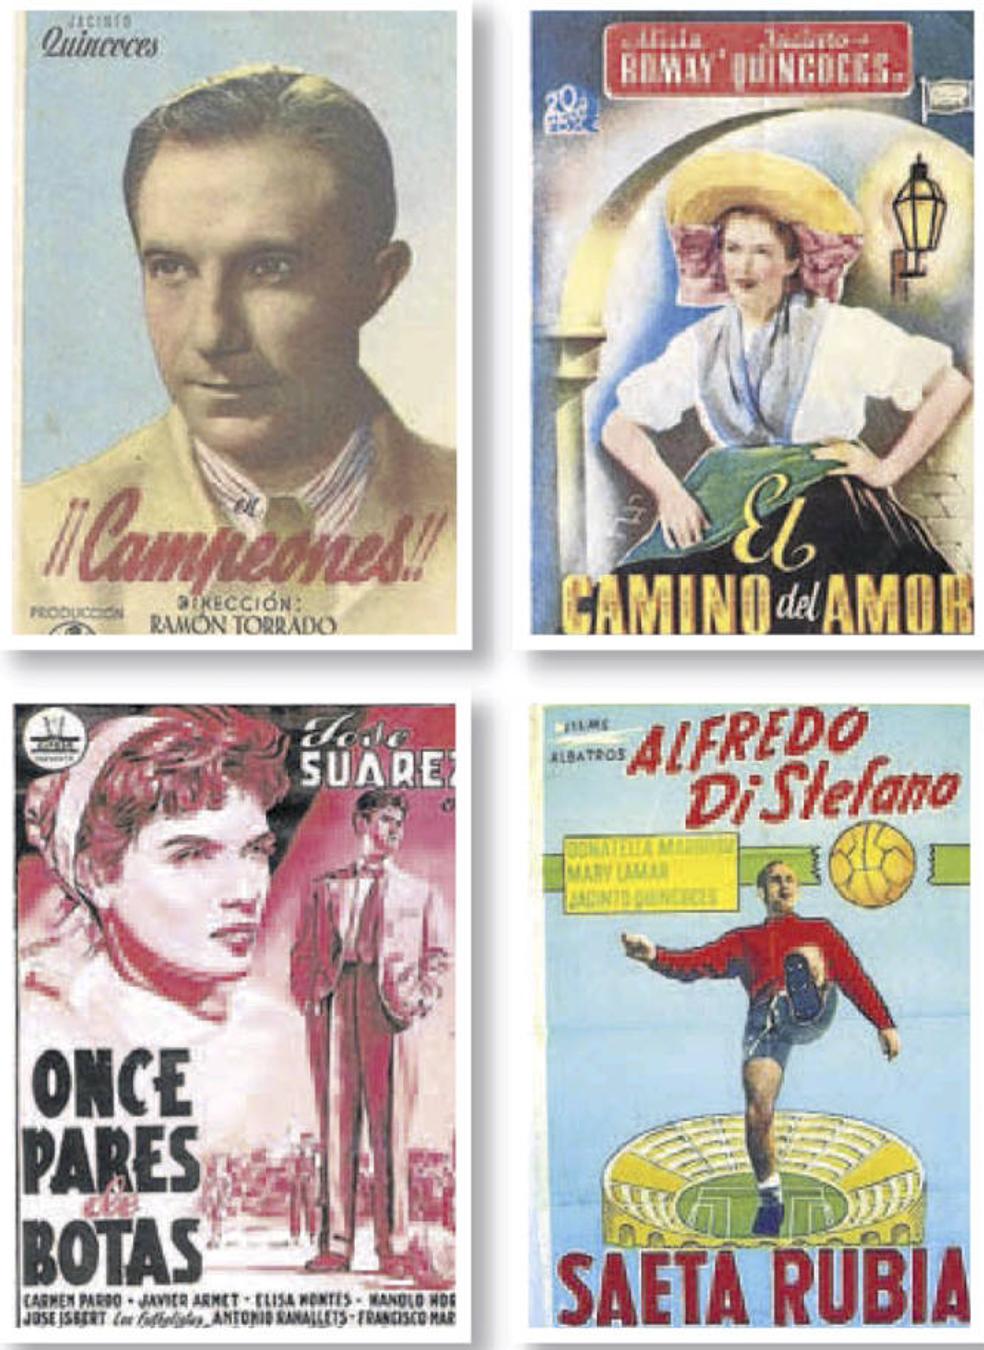 Carteles de cine de la época con Quincoces como protagonista de algunos de ellos. 